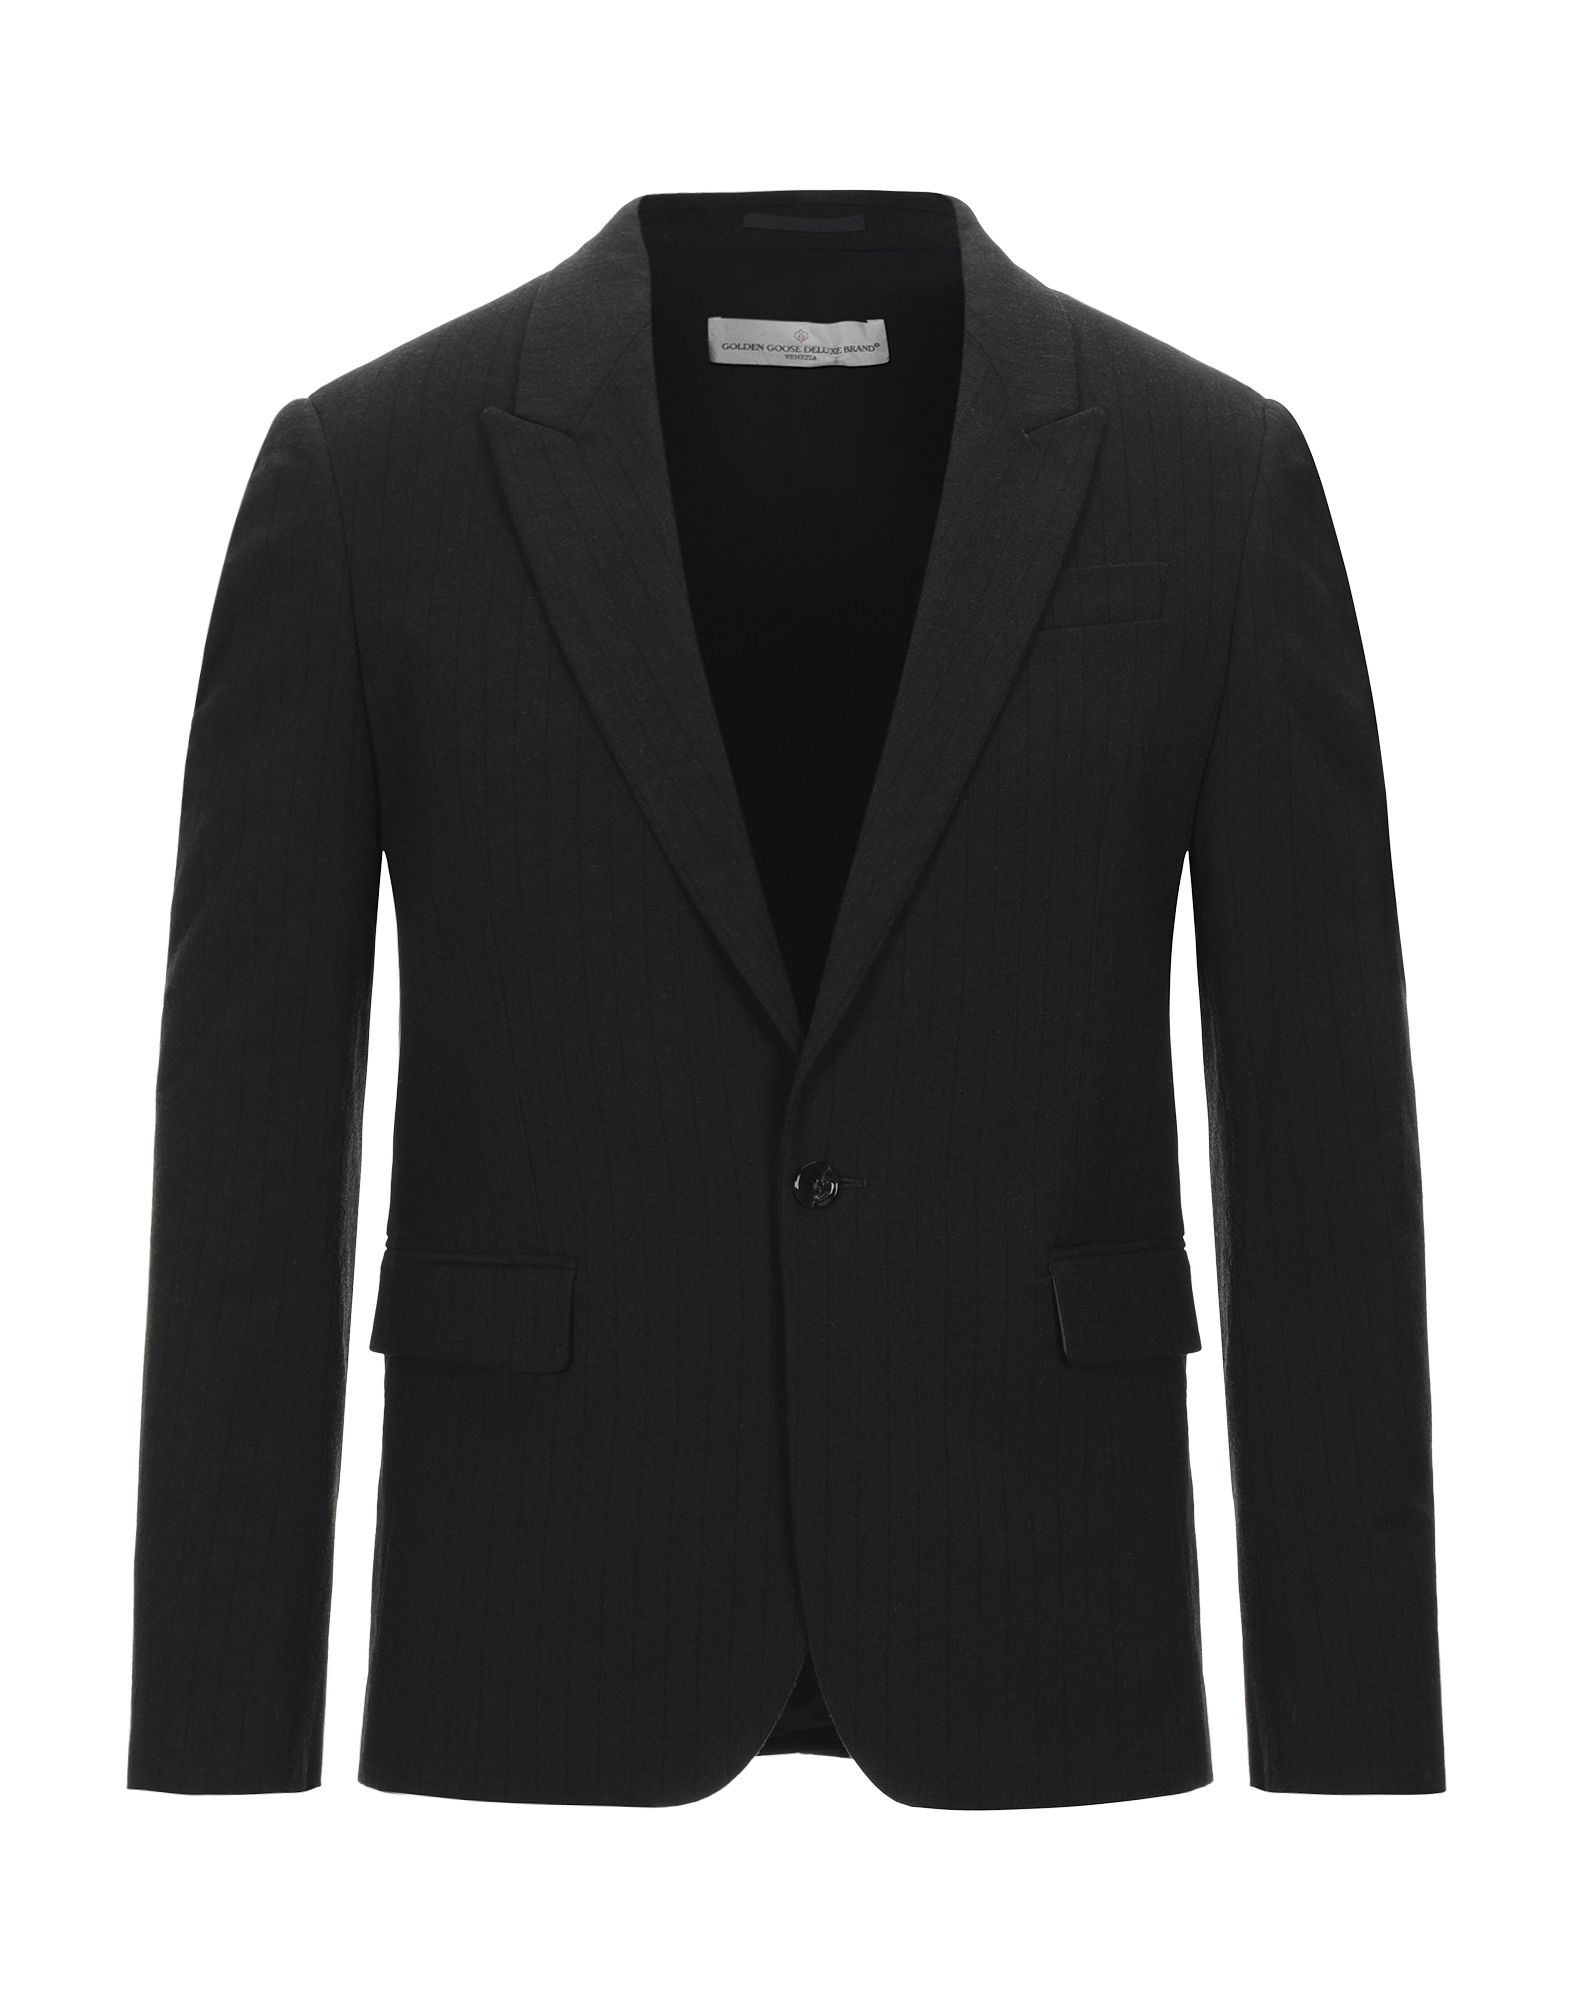 GOLDEN GOOSE DELUXE BRAND Suit jackets - Item 49584687